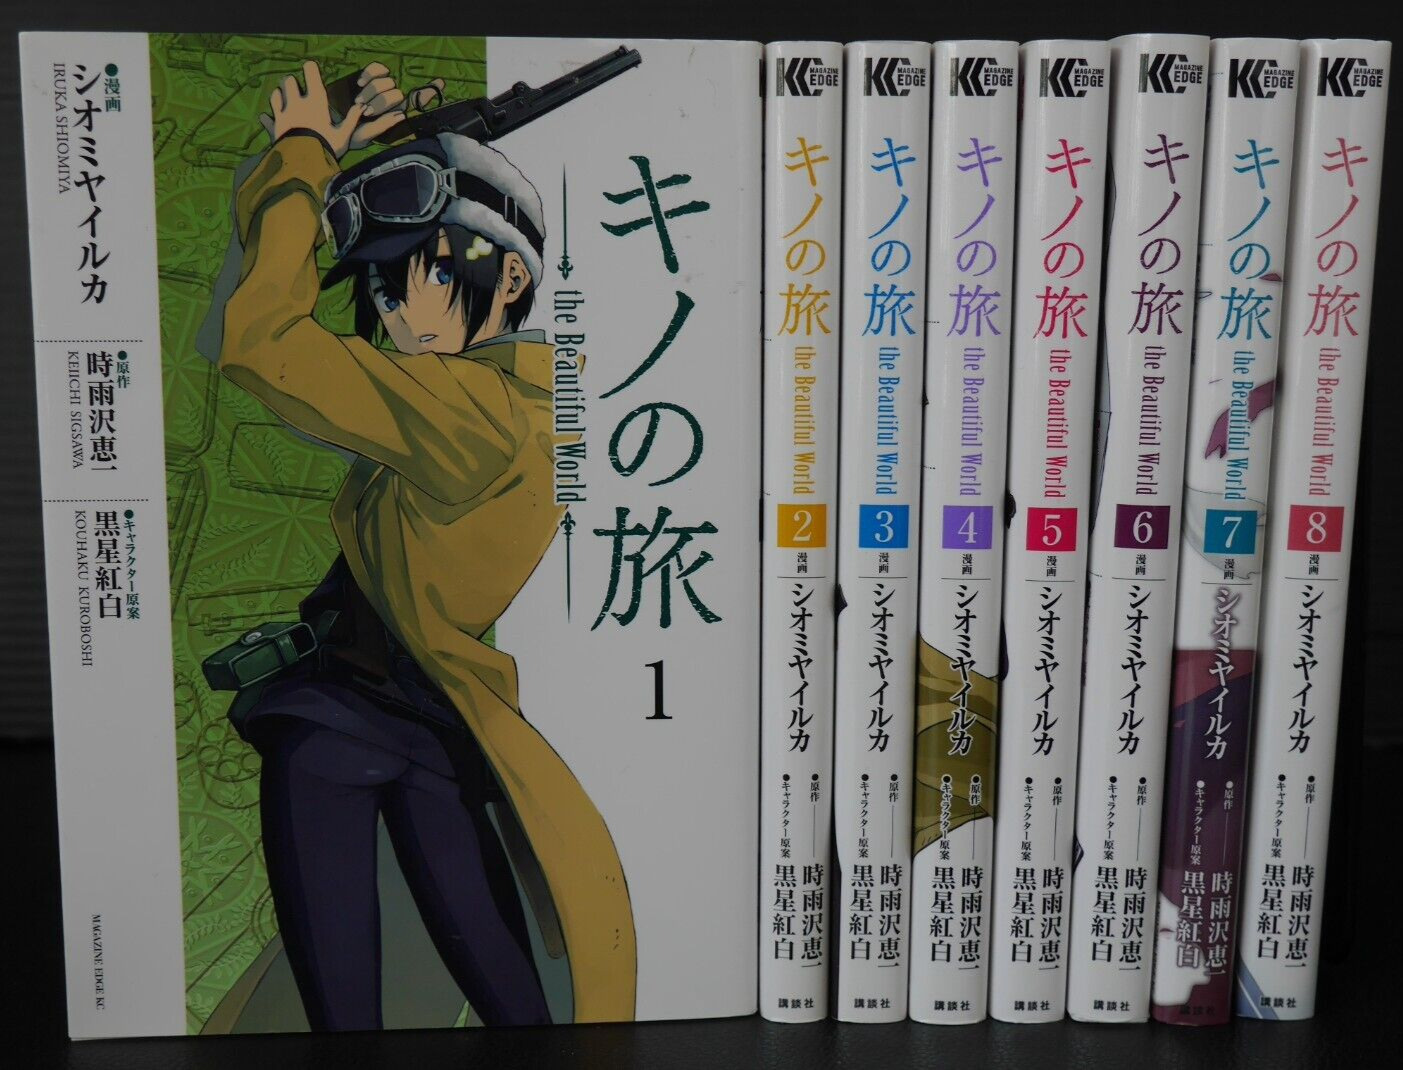 Kino\'s Journey: the Beautiful World vol.1-8 Manga LOT by Iruka Shinomiya - JAPAN